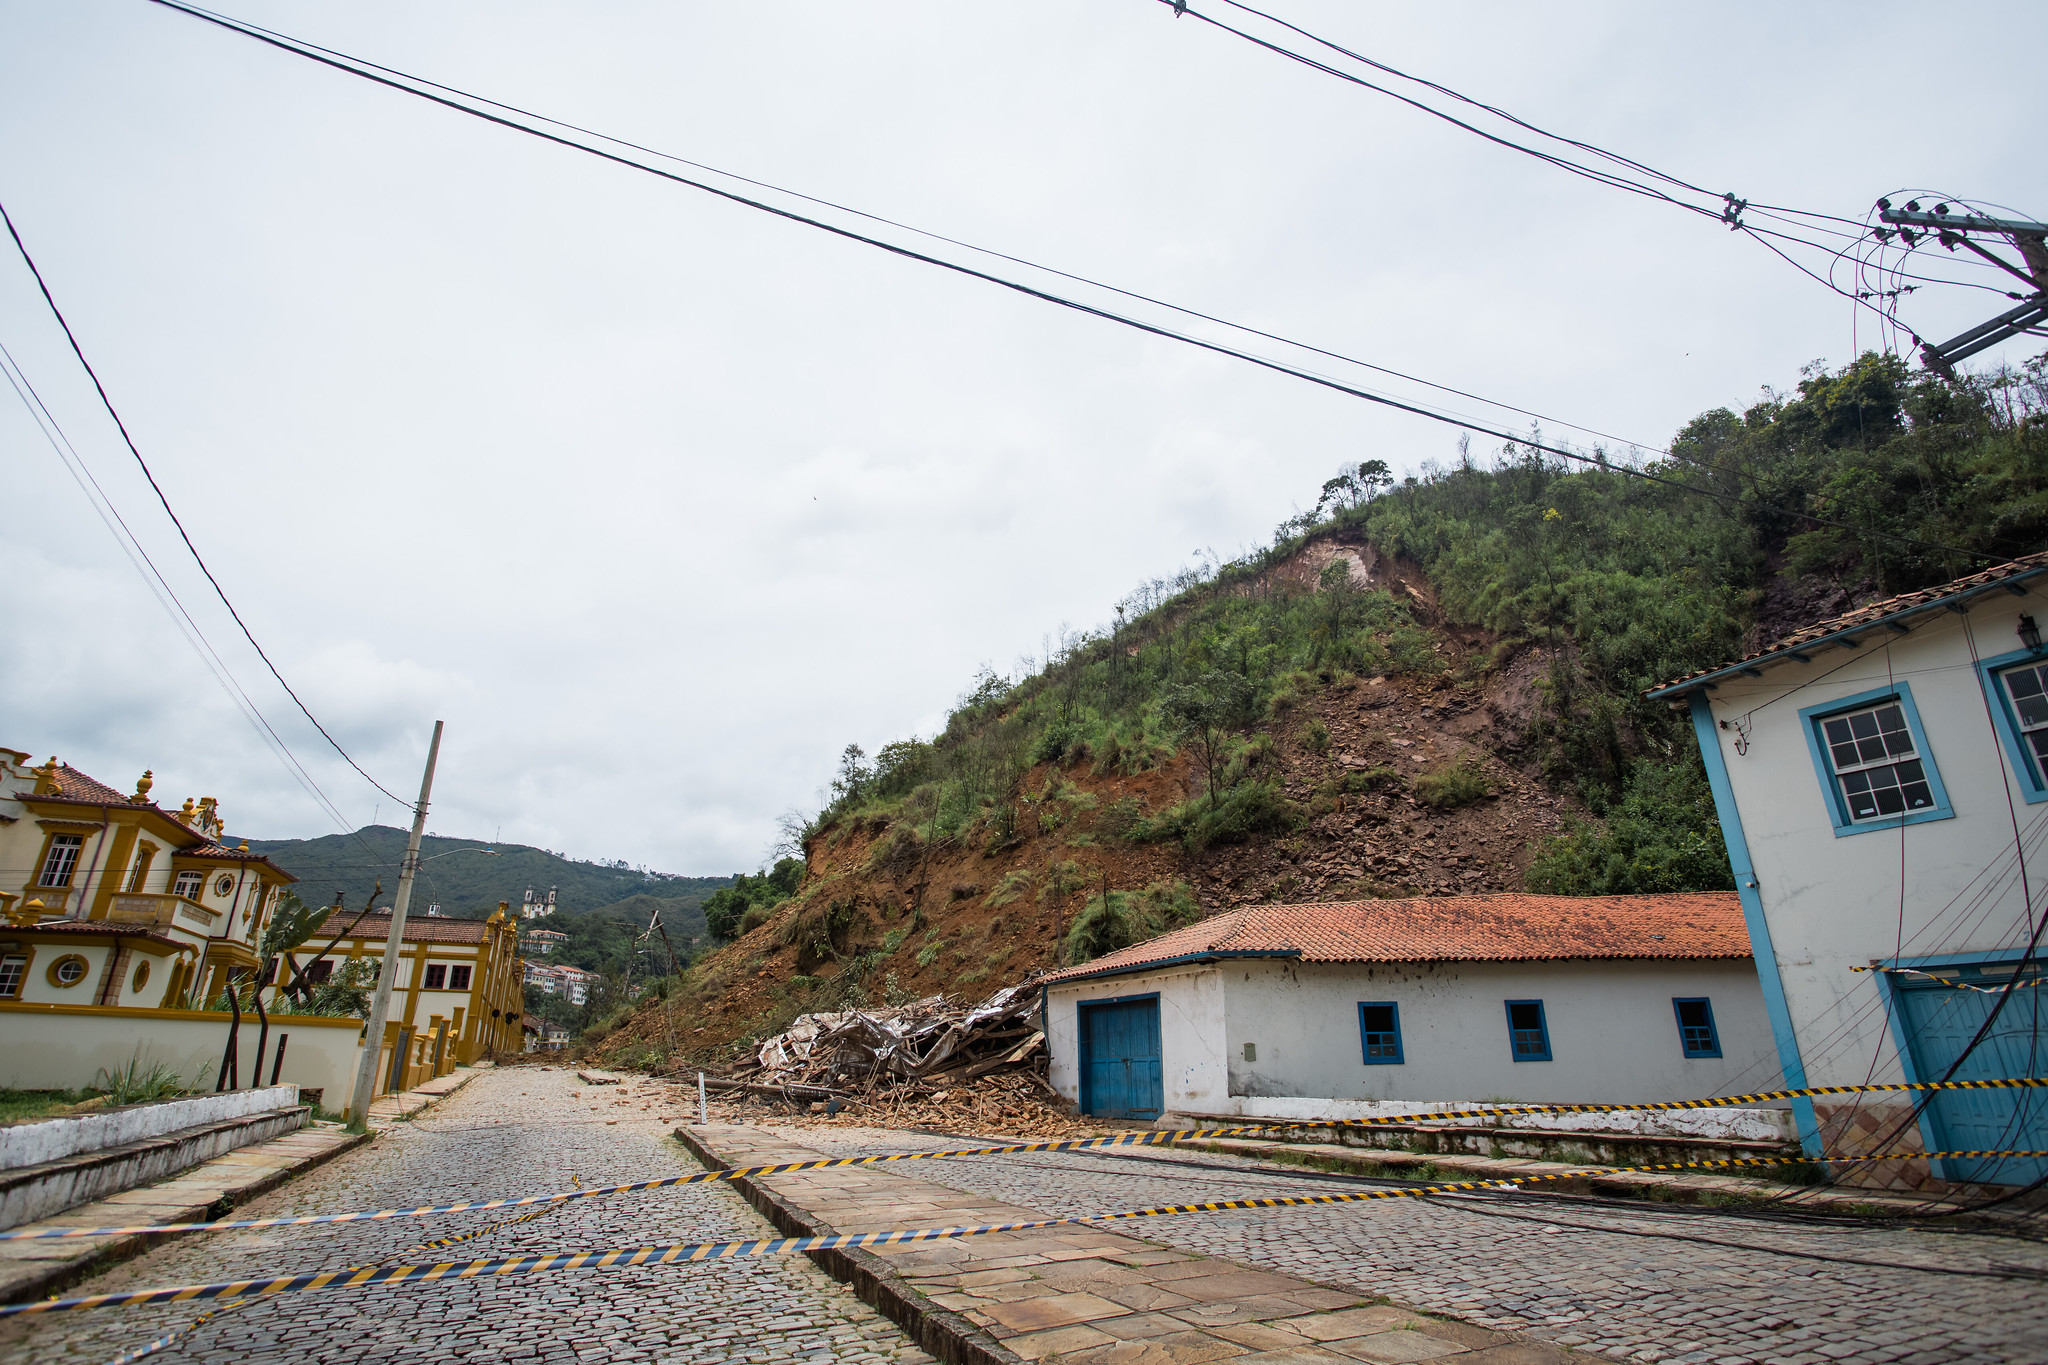 Deslizamento do Morro da Forca em Ouro Preto ocorreu dia 13 de janeiro de 2022 - Foto: Ane Souz